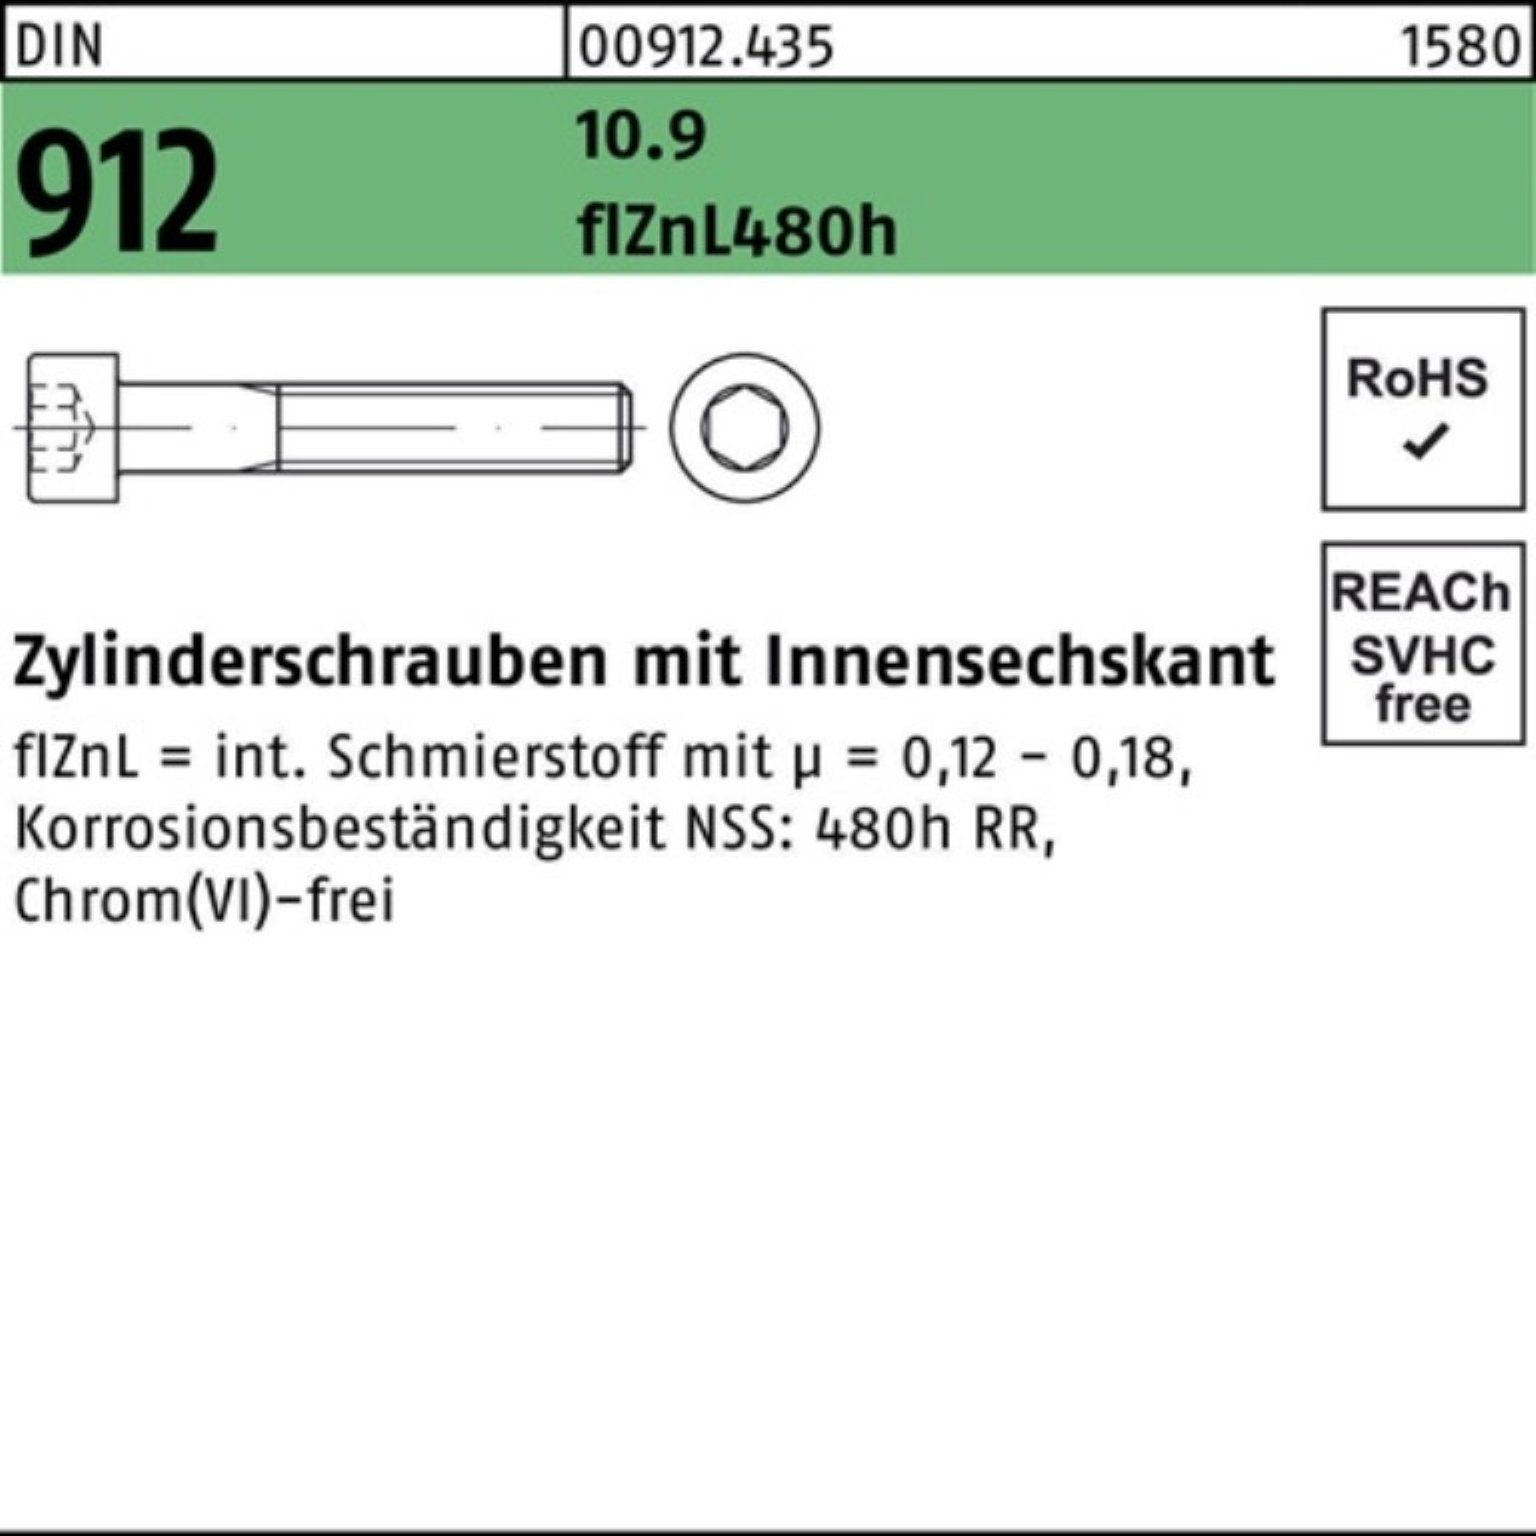 Zylinderschraube 100er M10x50 Reyher Pack flZnL/nc/x/x DIN 912 Zylinderschraube 10.9 Innen-6kt